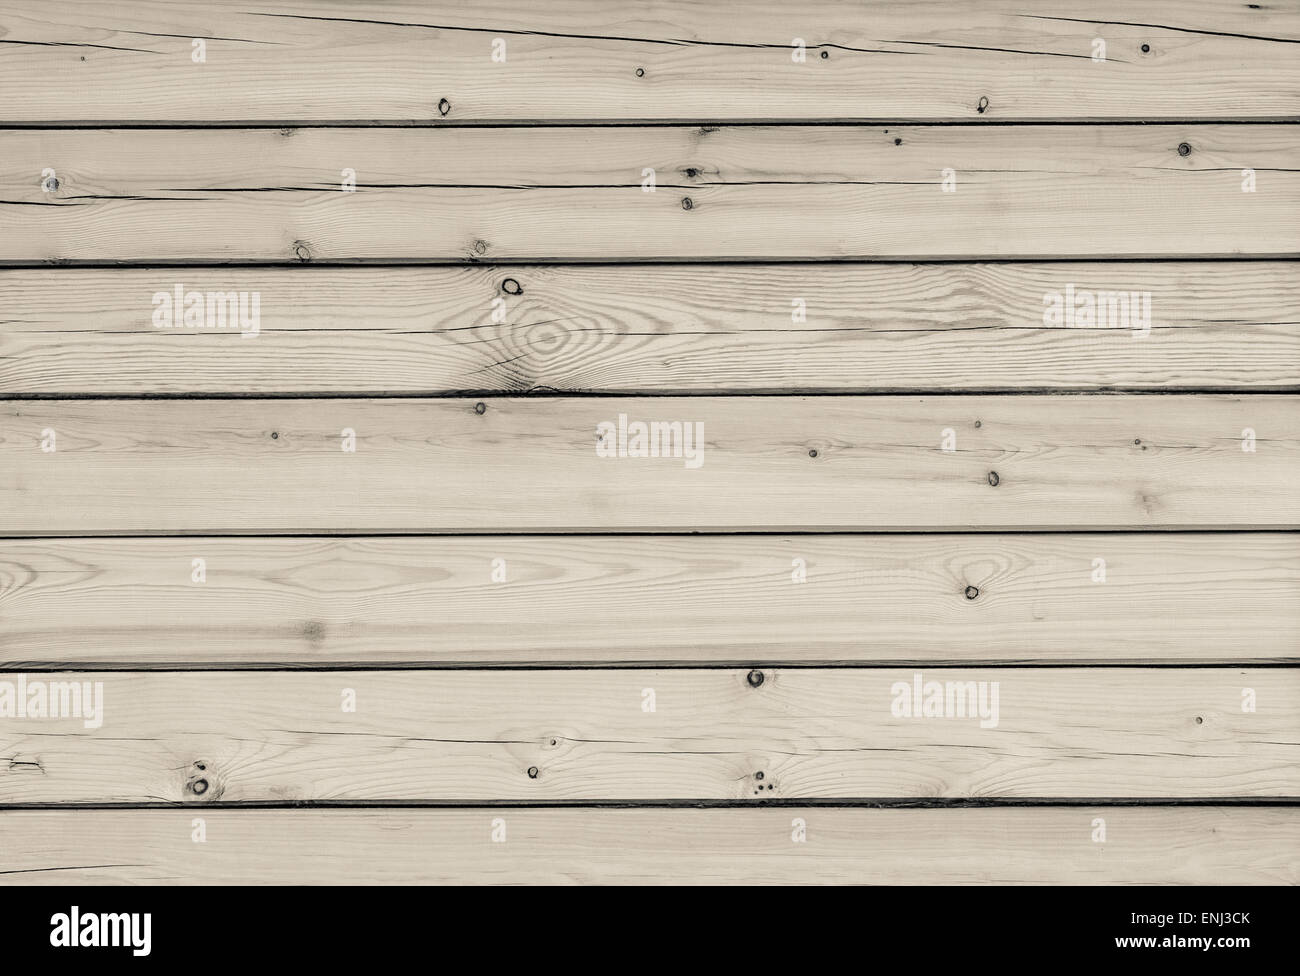 grunge wood planks background Stock Photo